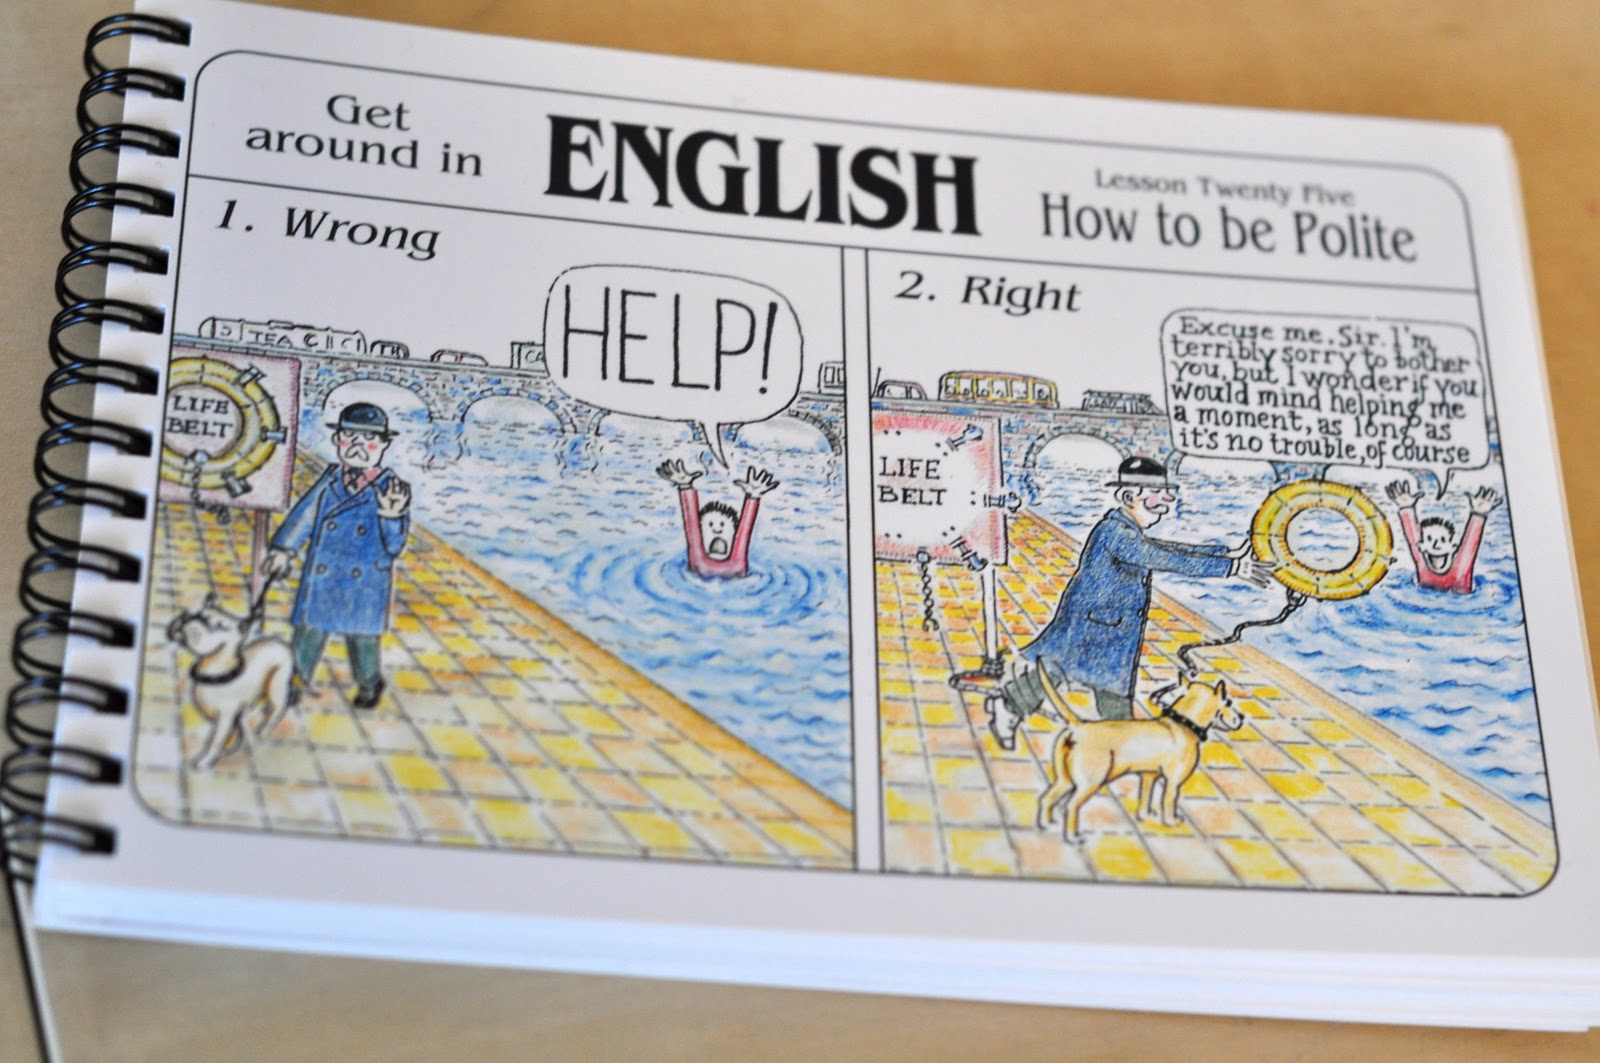 Word get around. How to be British. Открытки how to be British. Get around in English картинки. How to be polite in English.